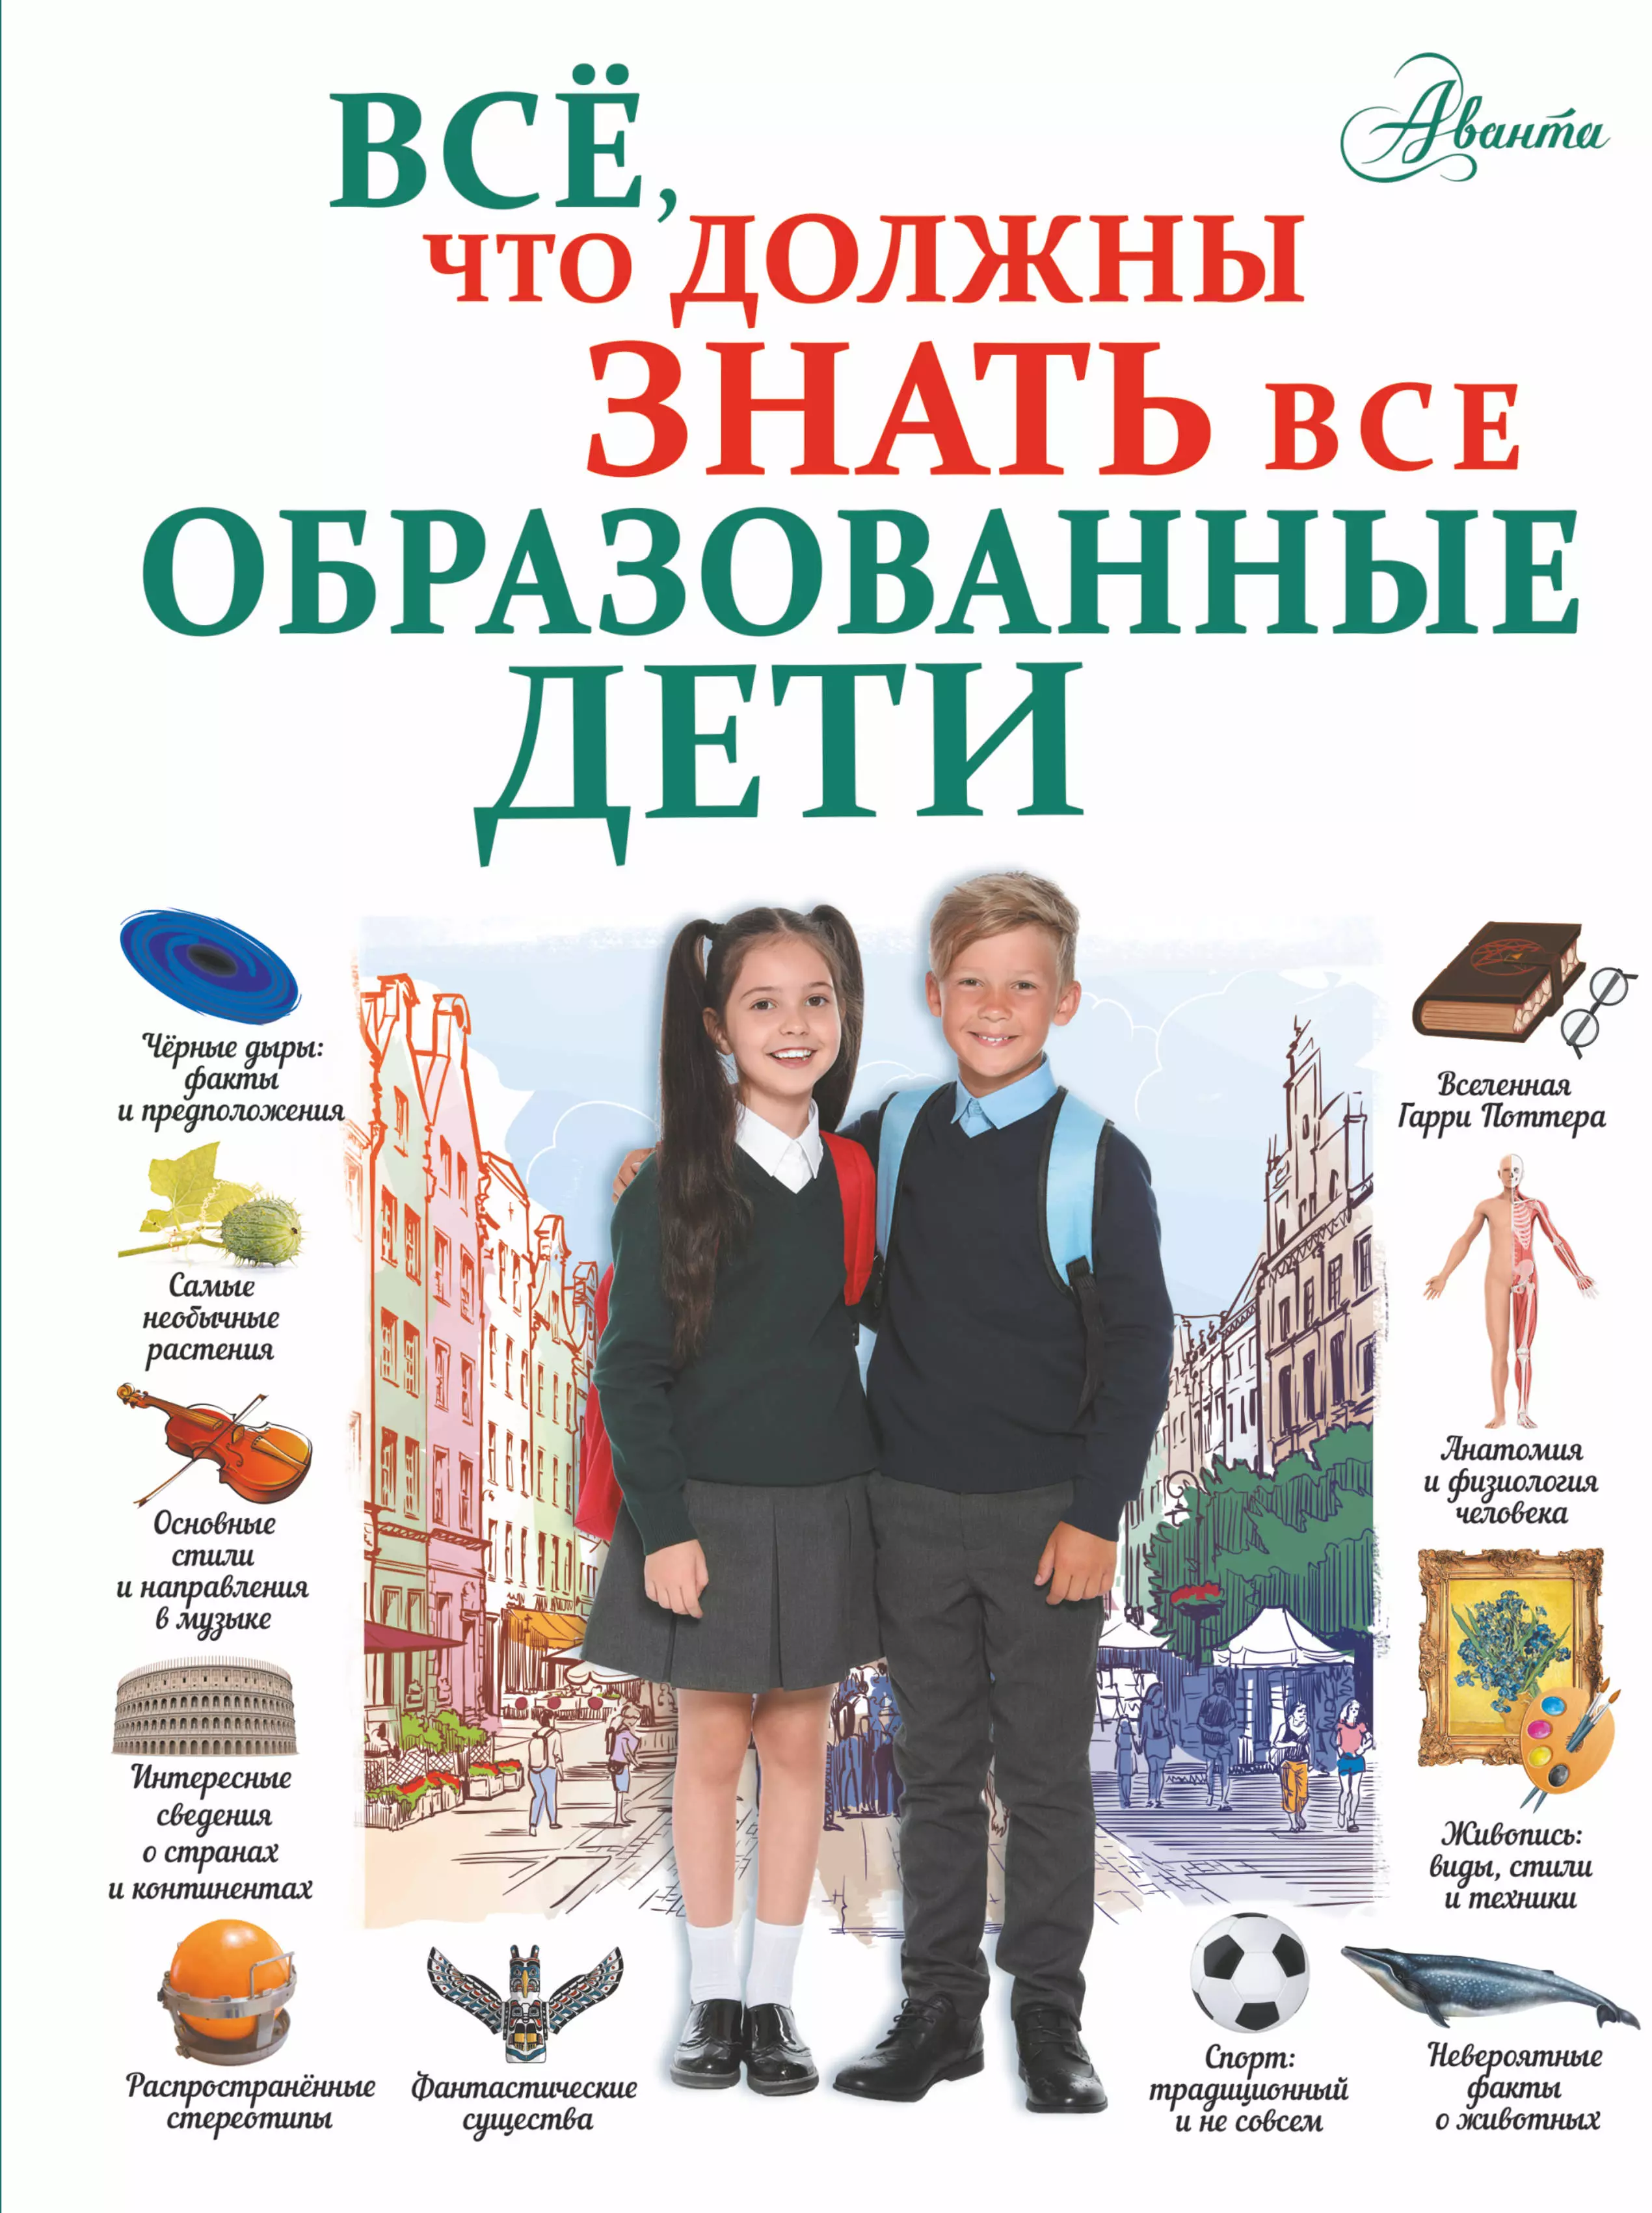 Шибко Елена Сергеевна Все, что должны знать все образованные дети всё что должны знать все образованные дети шибко елена сергеевна